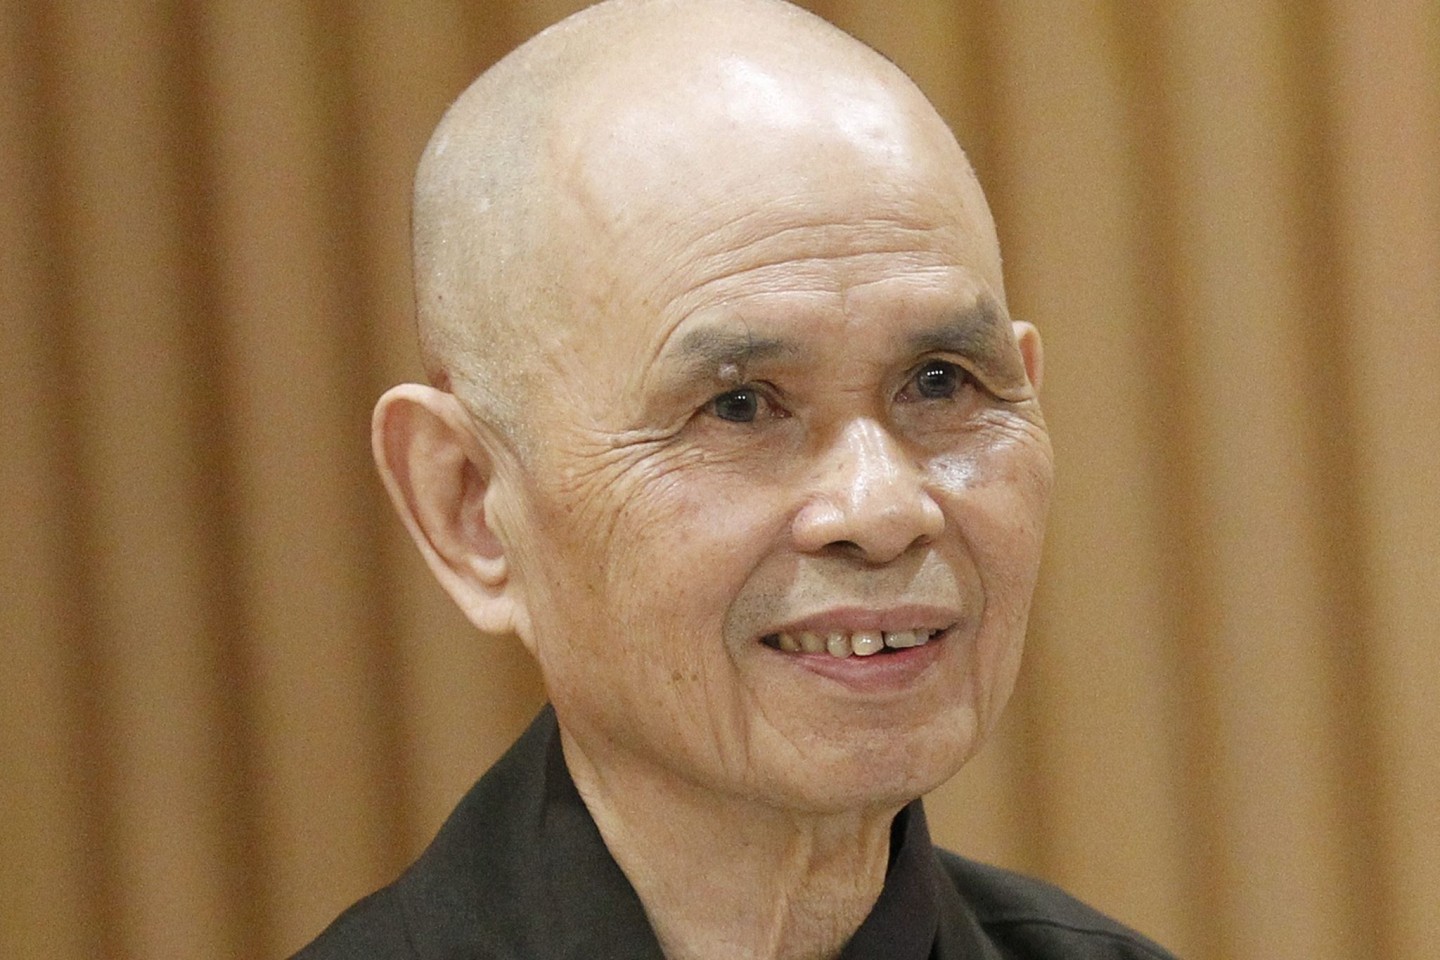 Der vietnamesische zen-buddhistische Mönch Thich Nhat Hanh ist gestorben. (Archivbild)